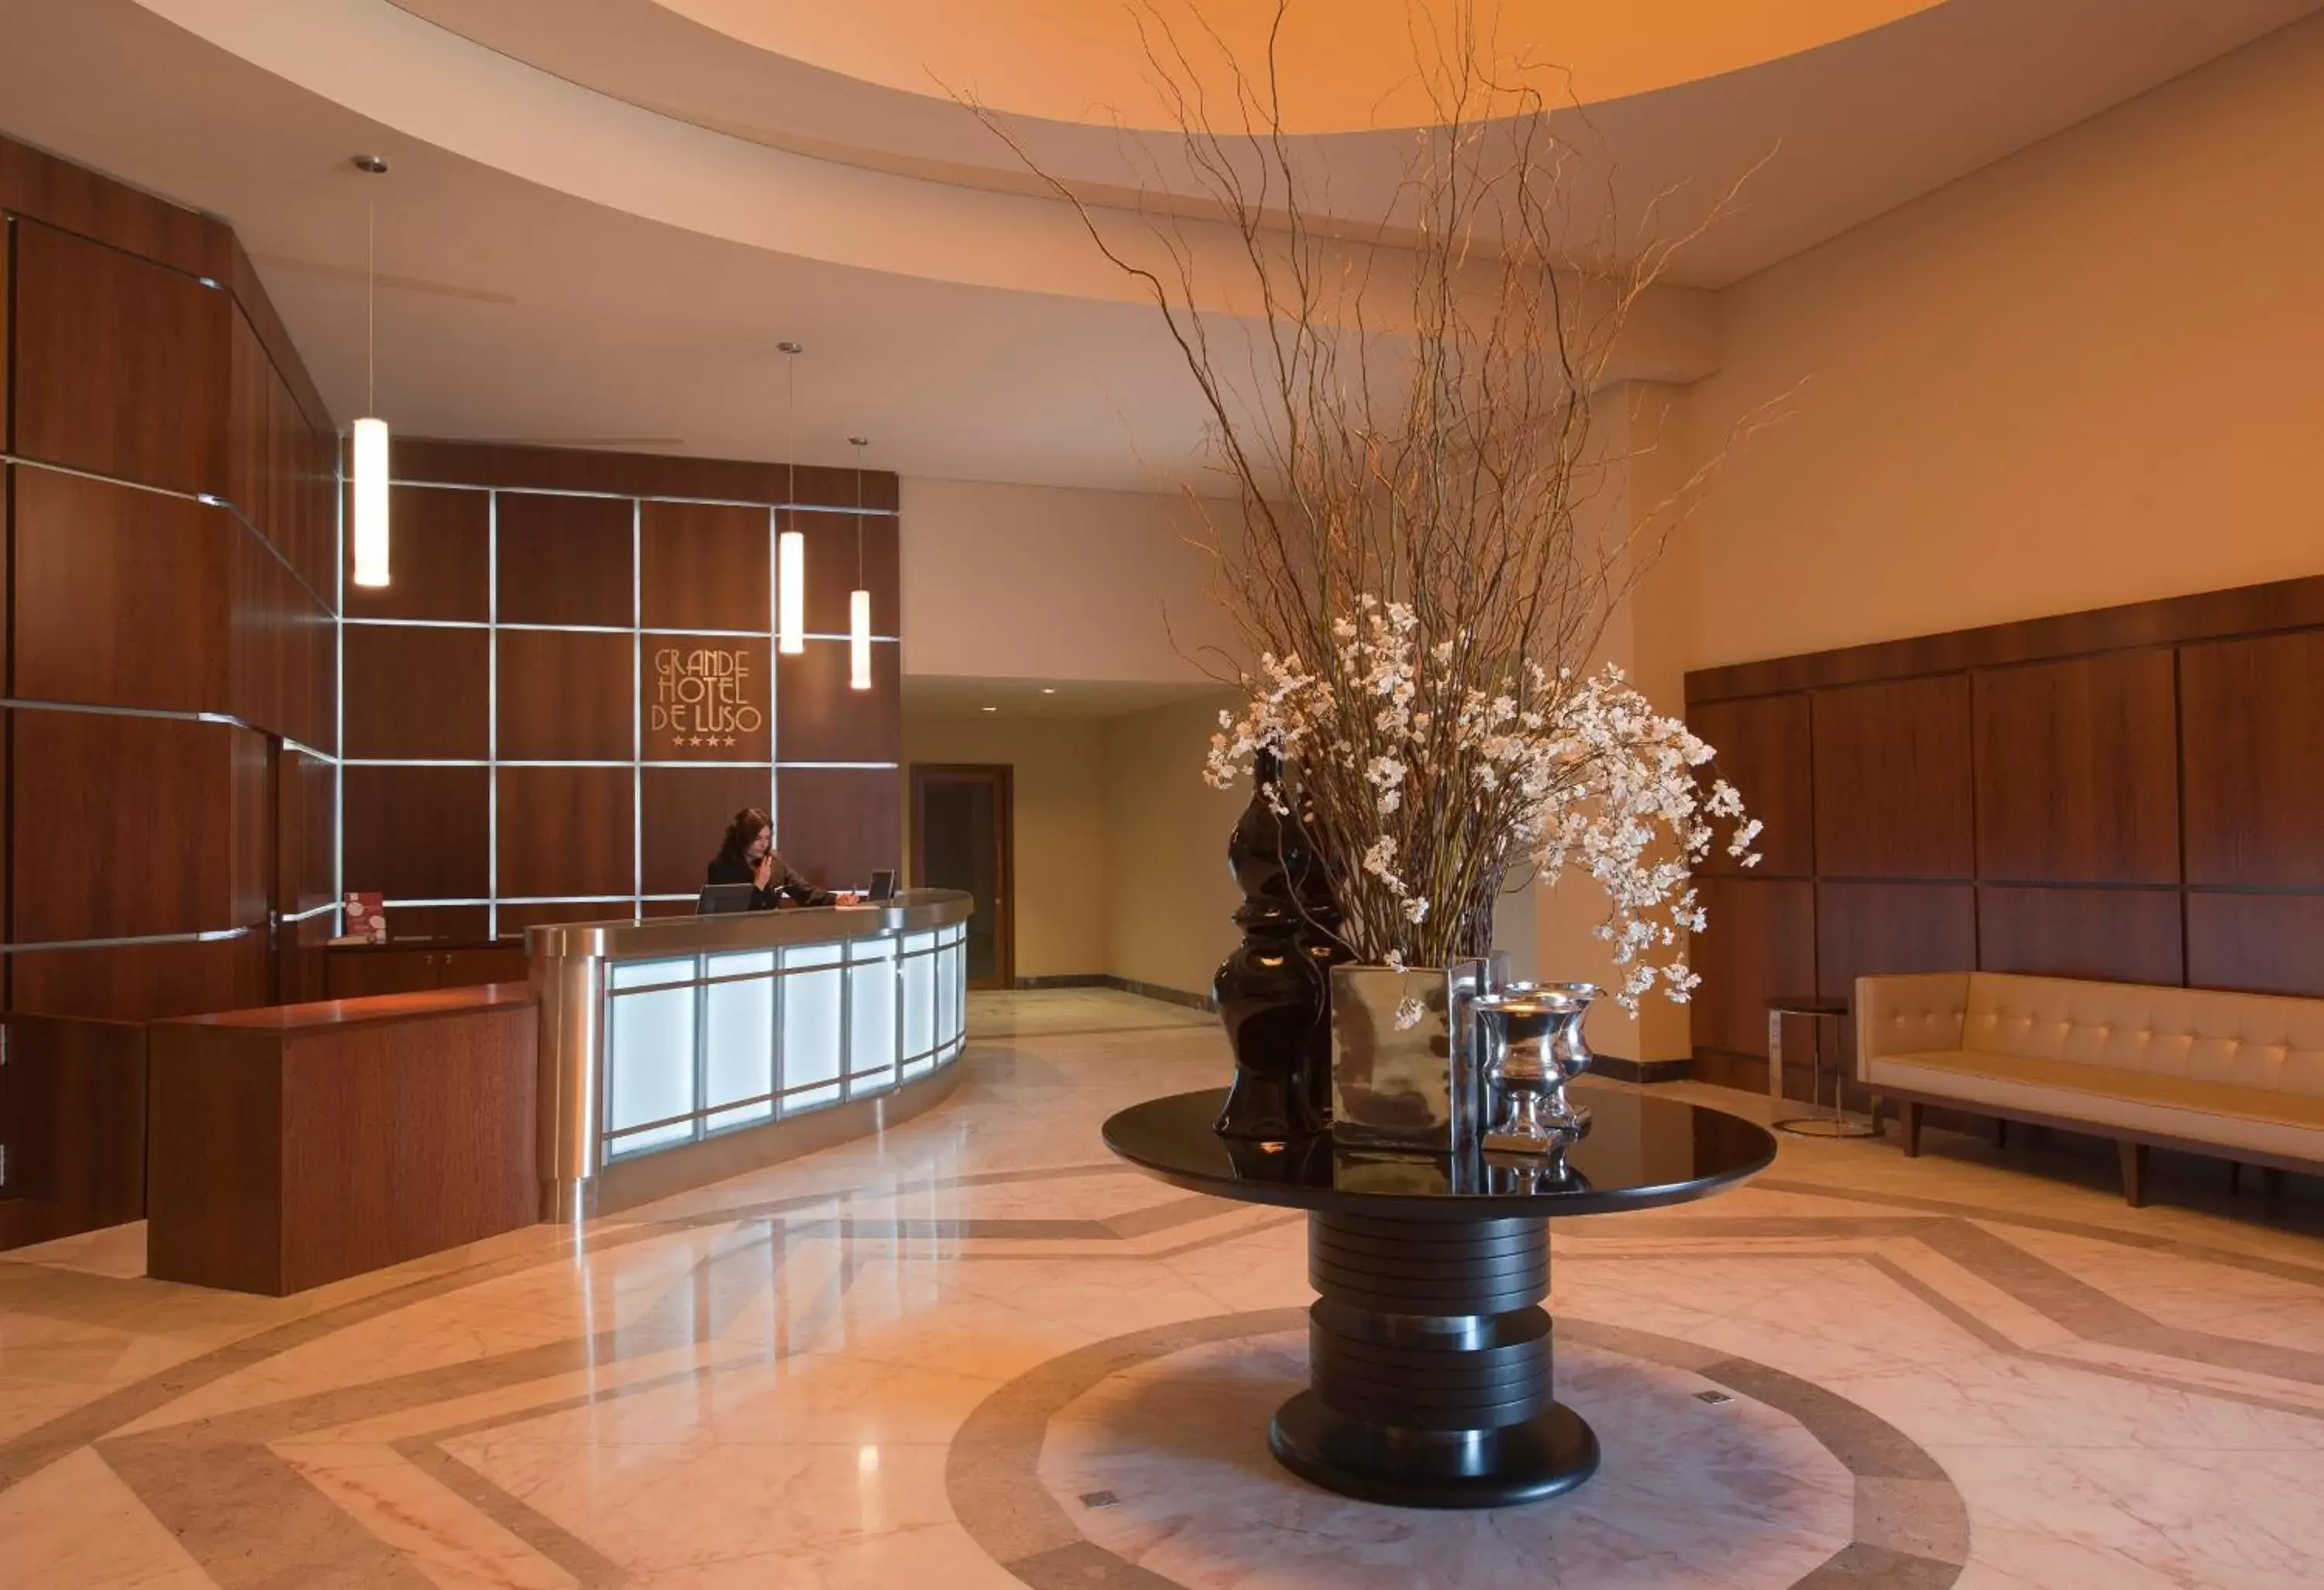 Lobby or reception, Lobby/Reception in Grande Hotel De Luso